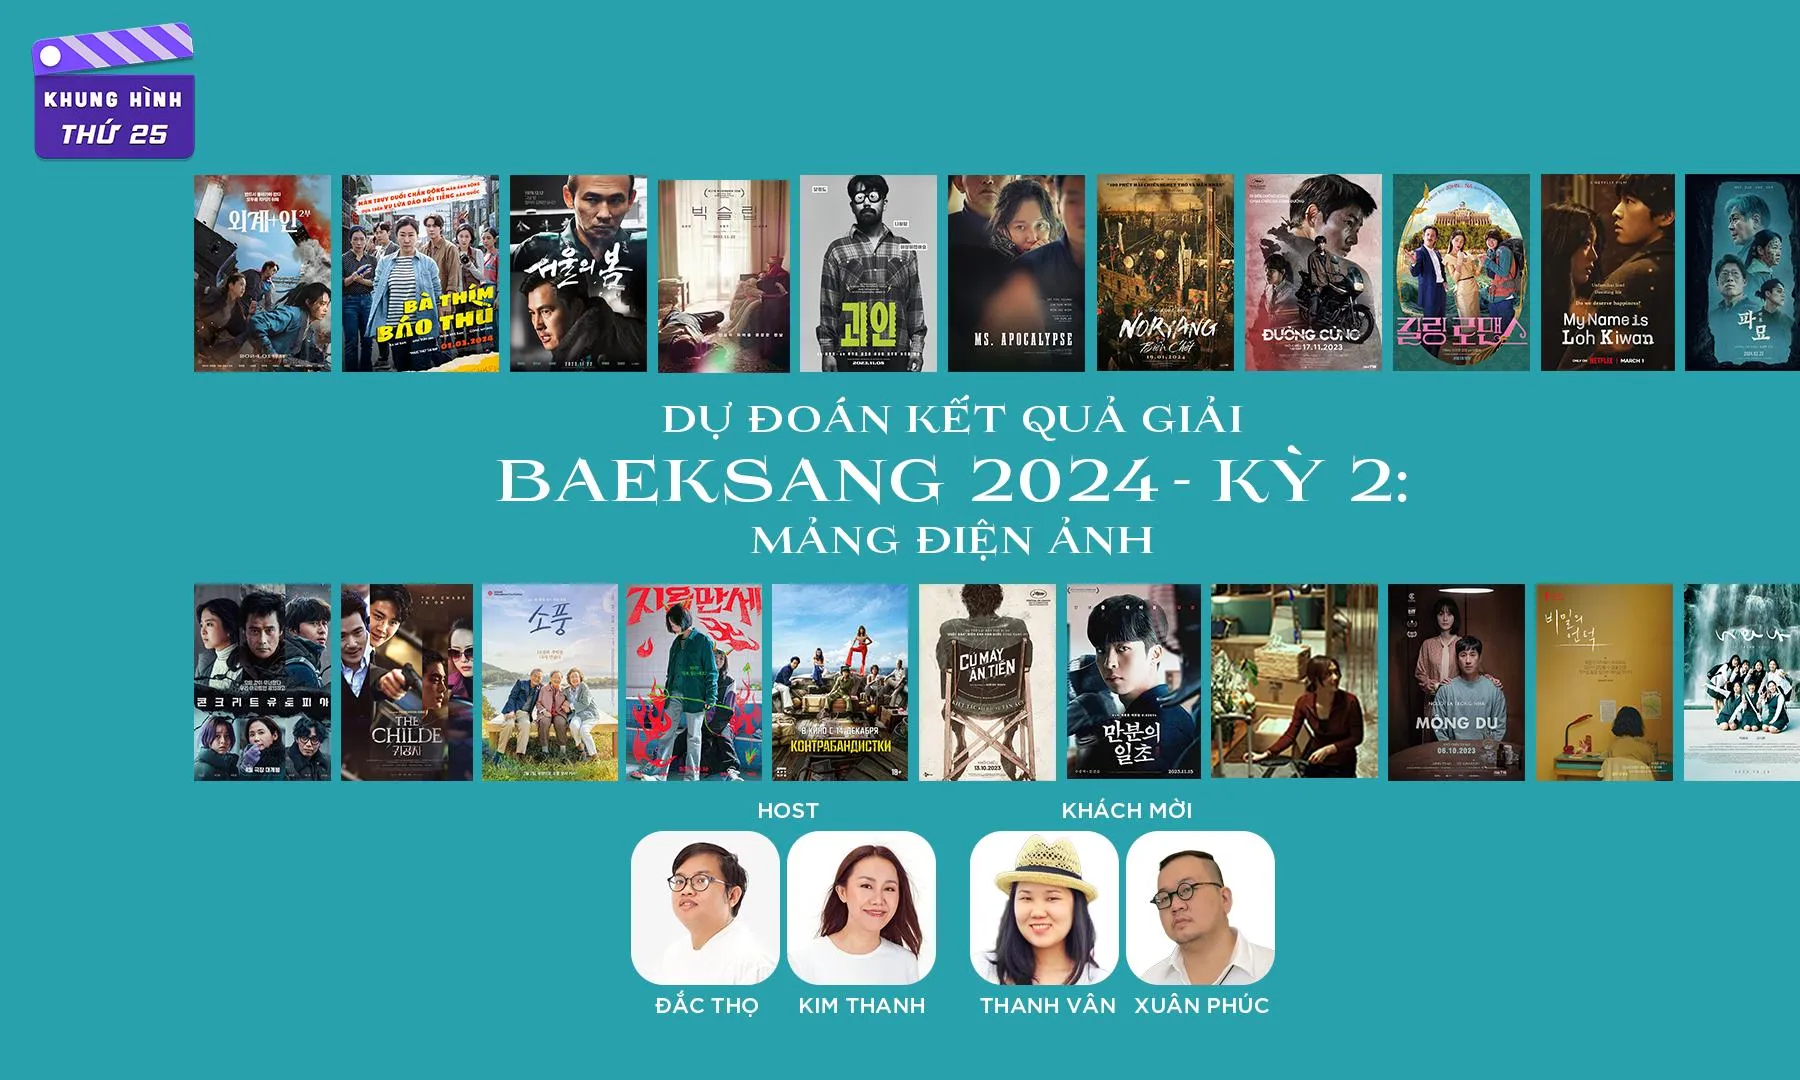 Exhuma hút khách nhưng khó lòng thắng giải phim hay nhất tại Baeksang 2024